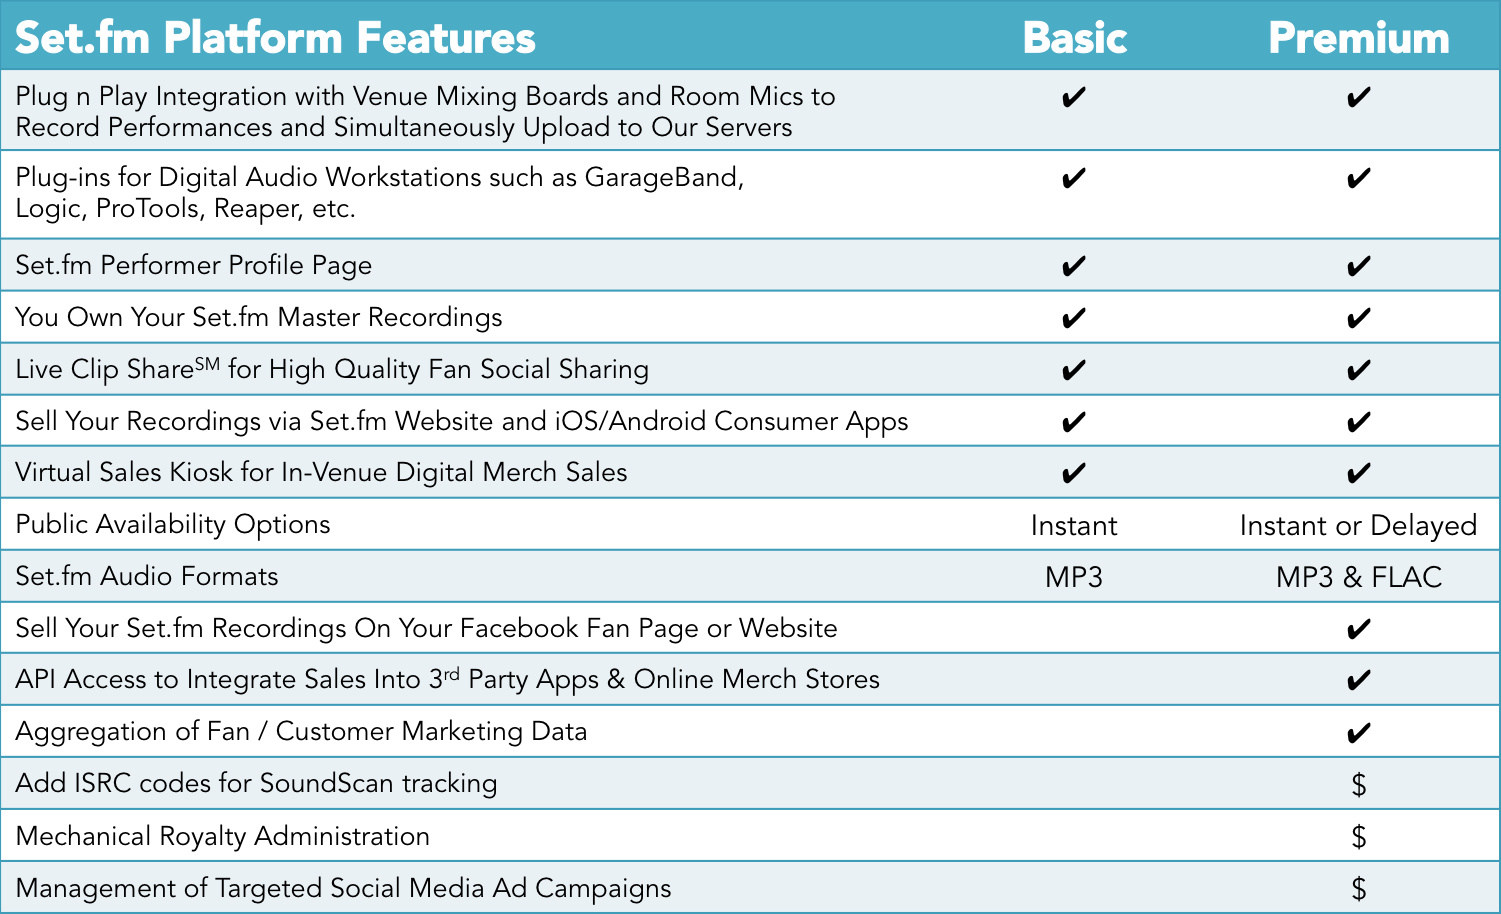 Set.fm Platform Features Table